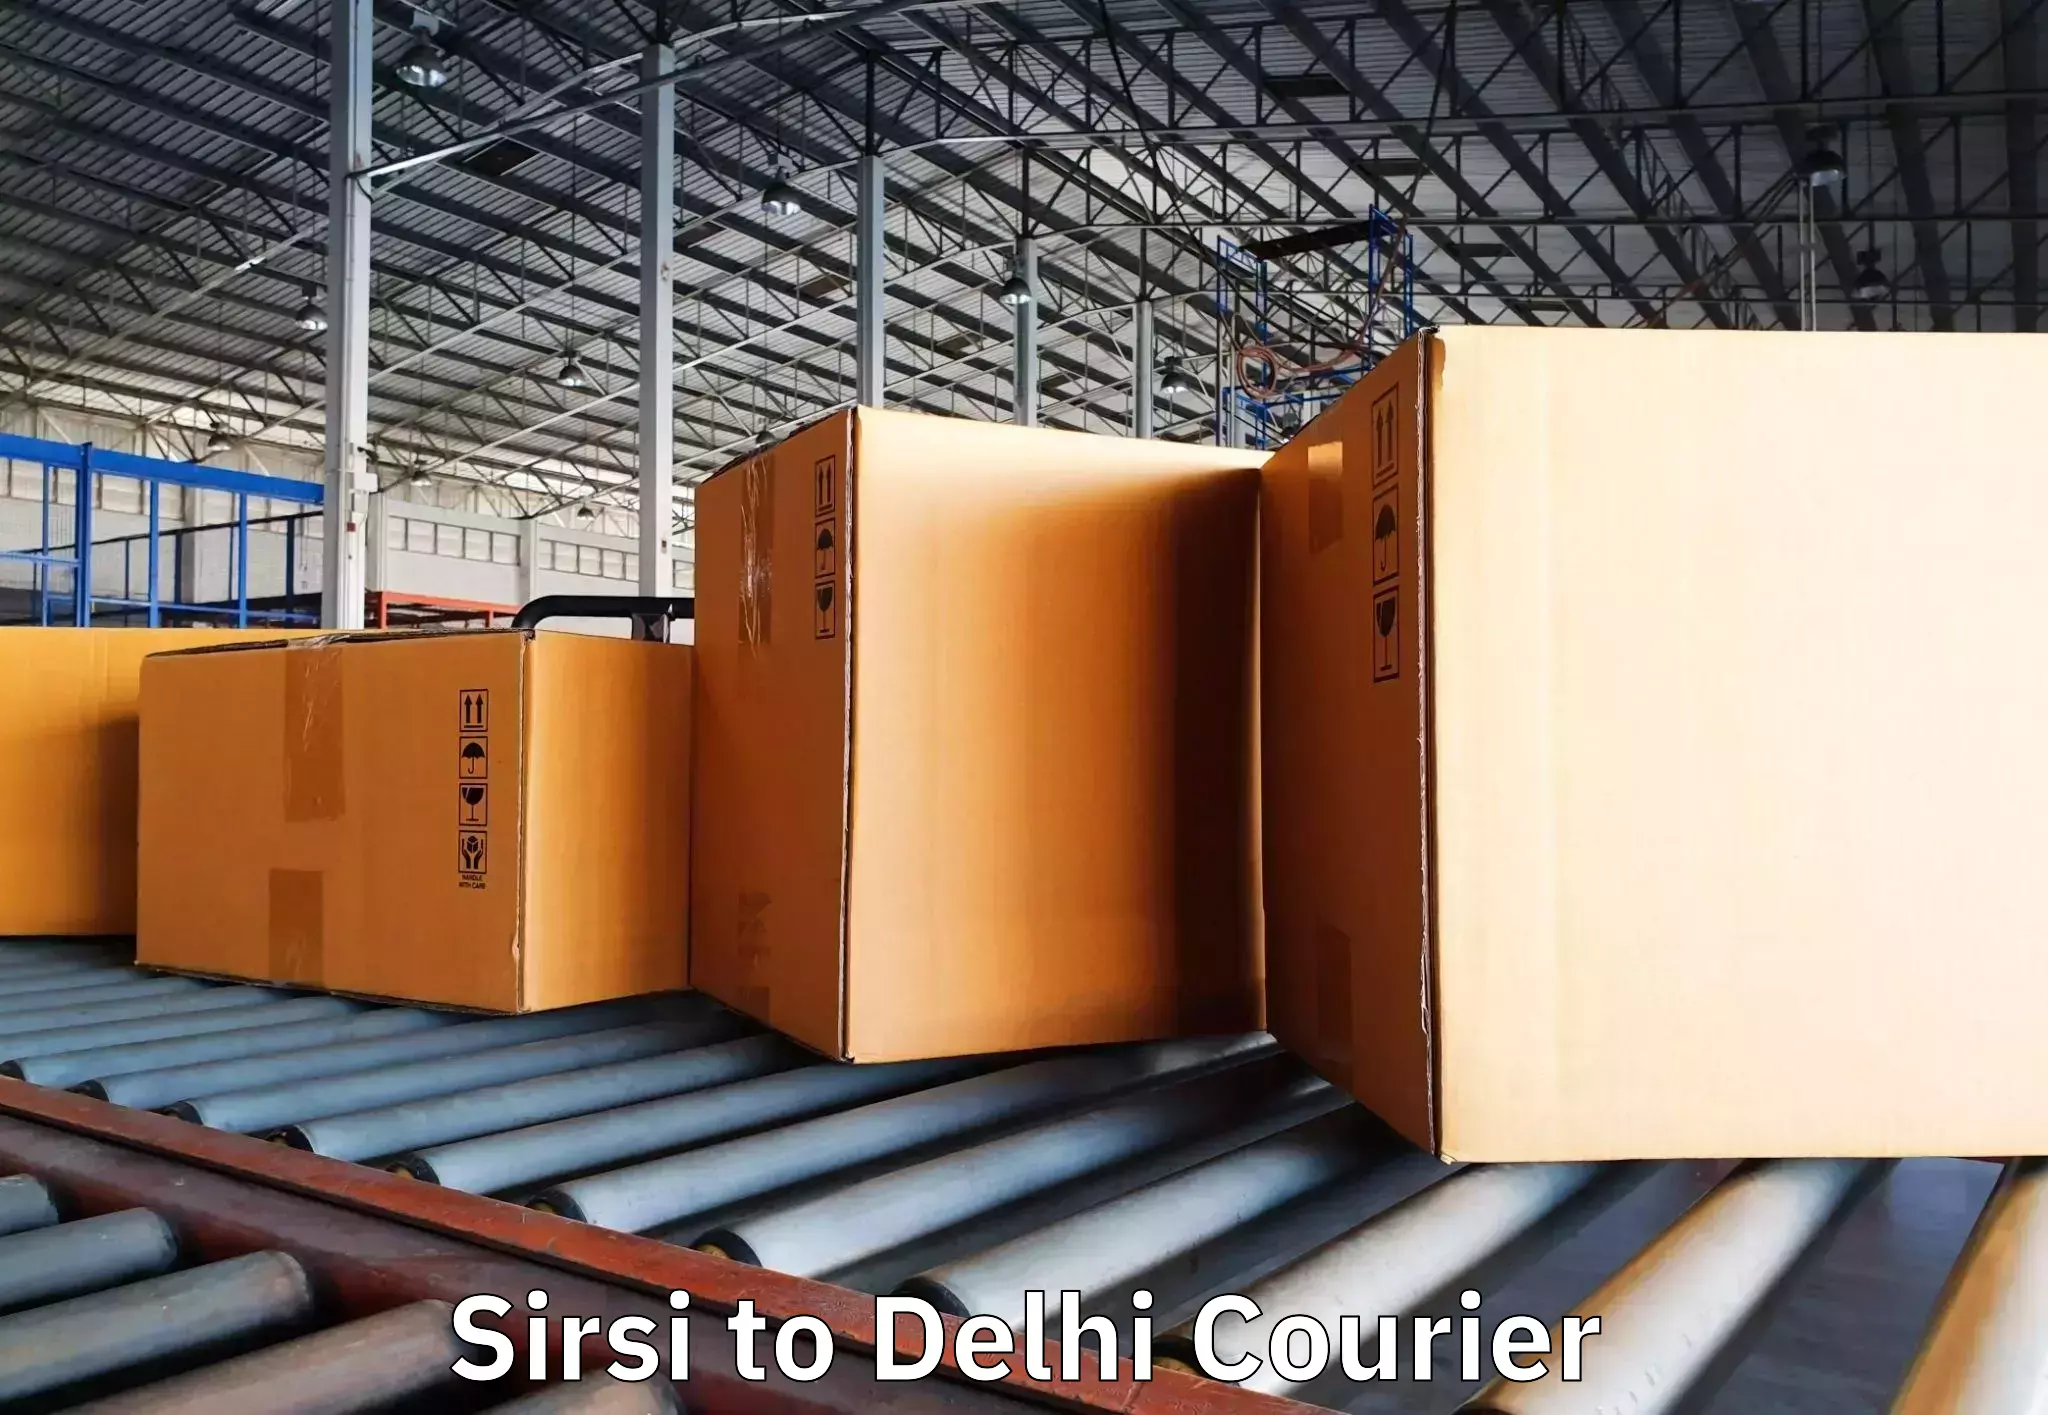 Furniture transport specialists Sirsi to Sarojini Nagar